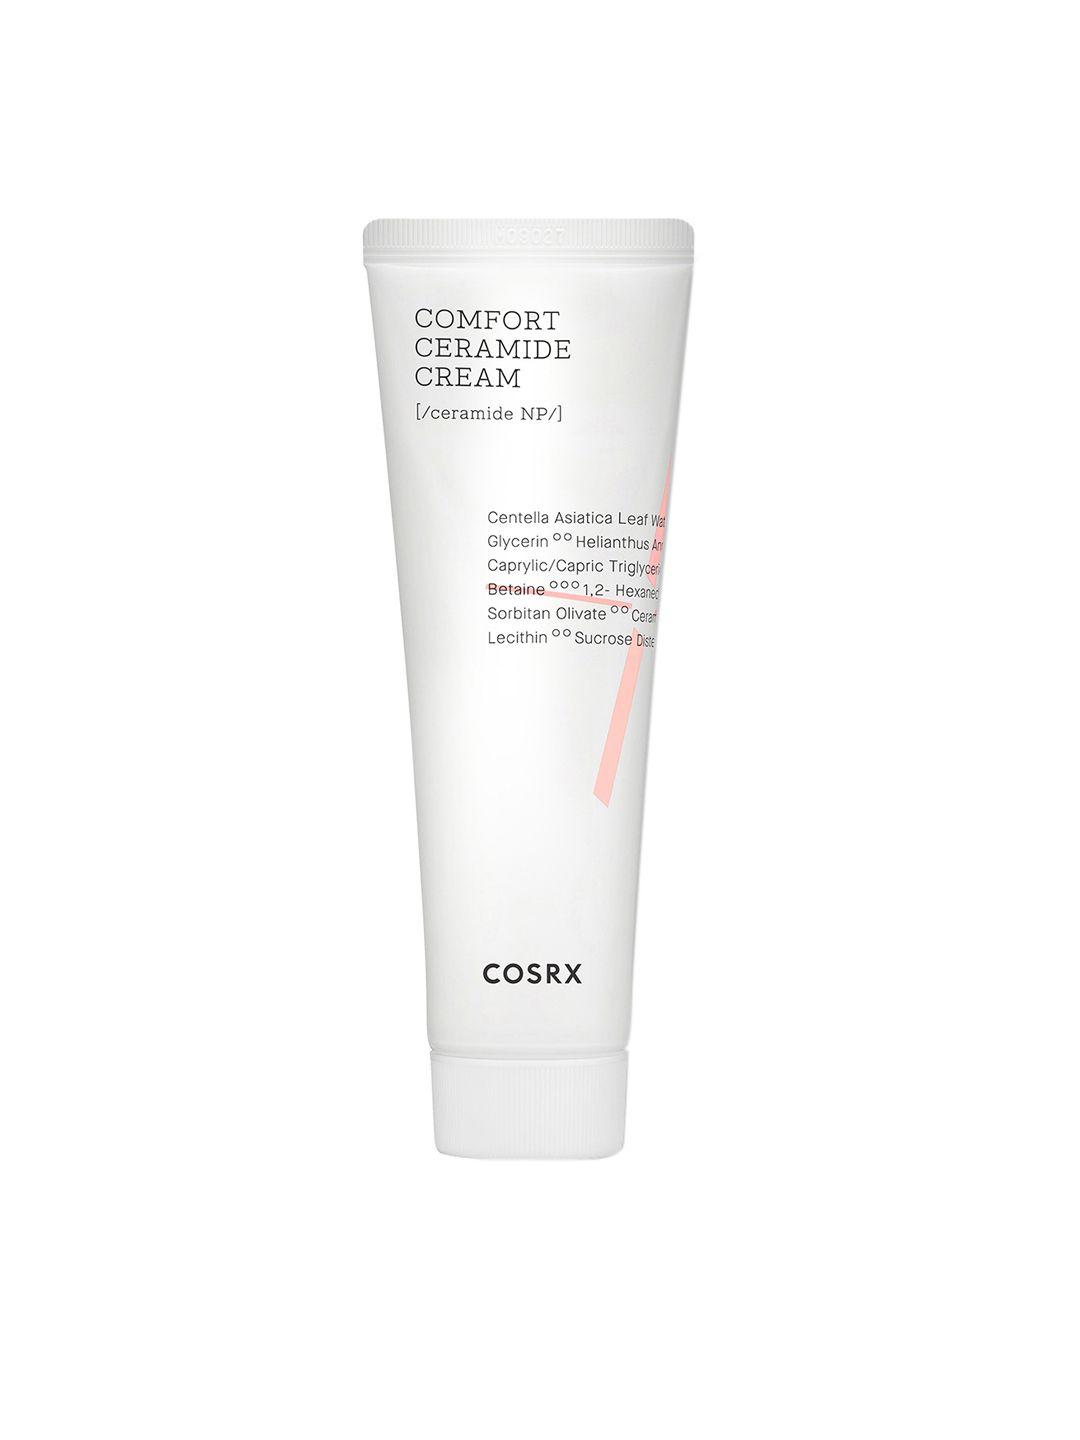 cosrx balancium comfort ceramide cream with ceramide & centella asiatica for redness - 80g